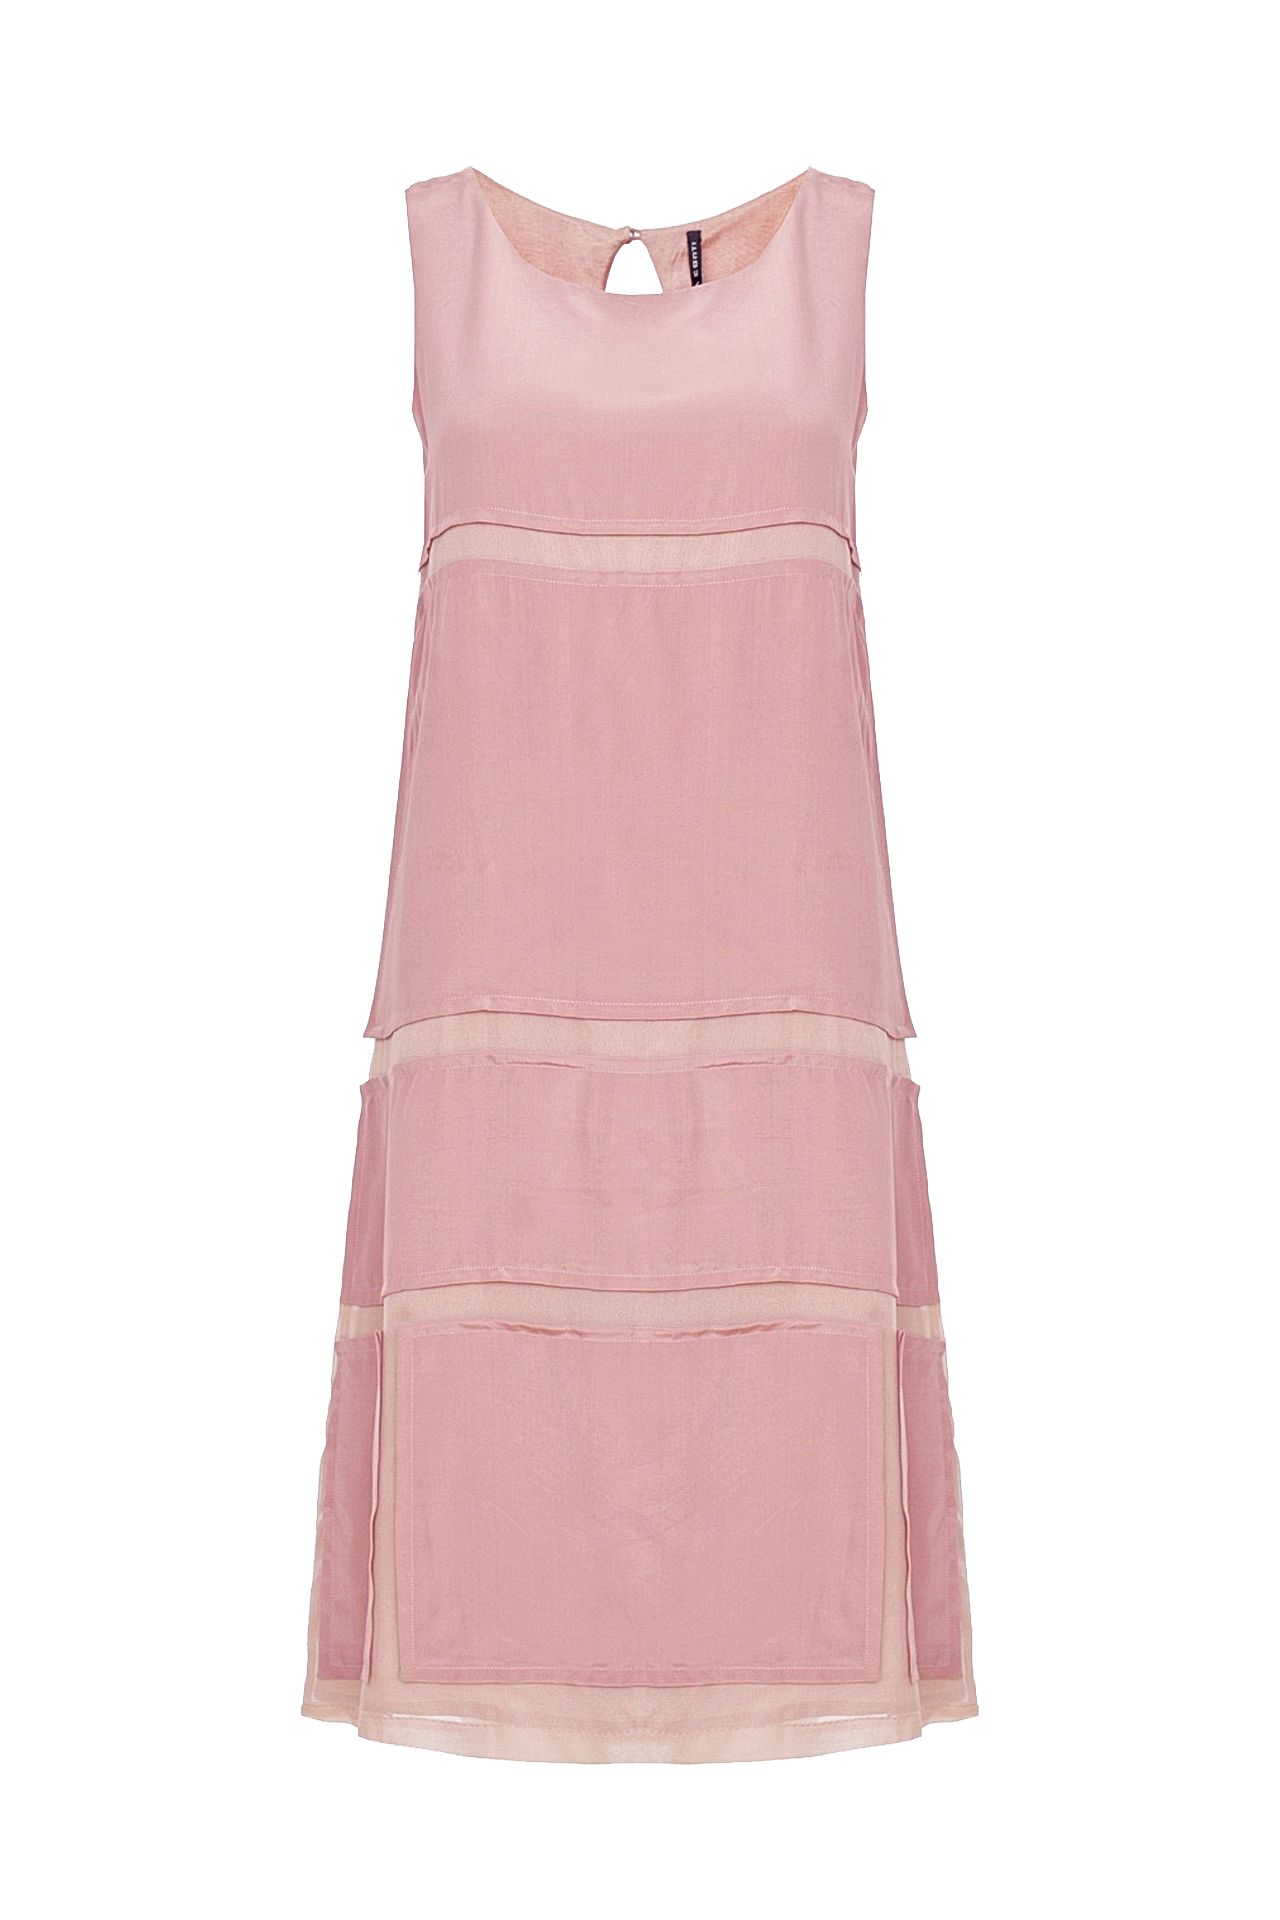 Одежда женская Платье LIVIANA CONTI (L2E701/12.1). Купить за 10176 руб.